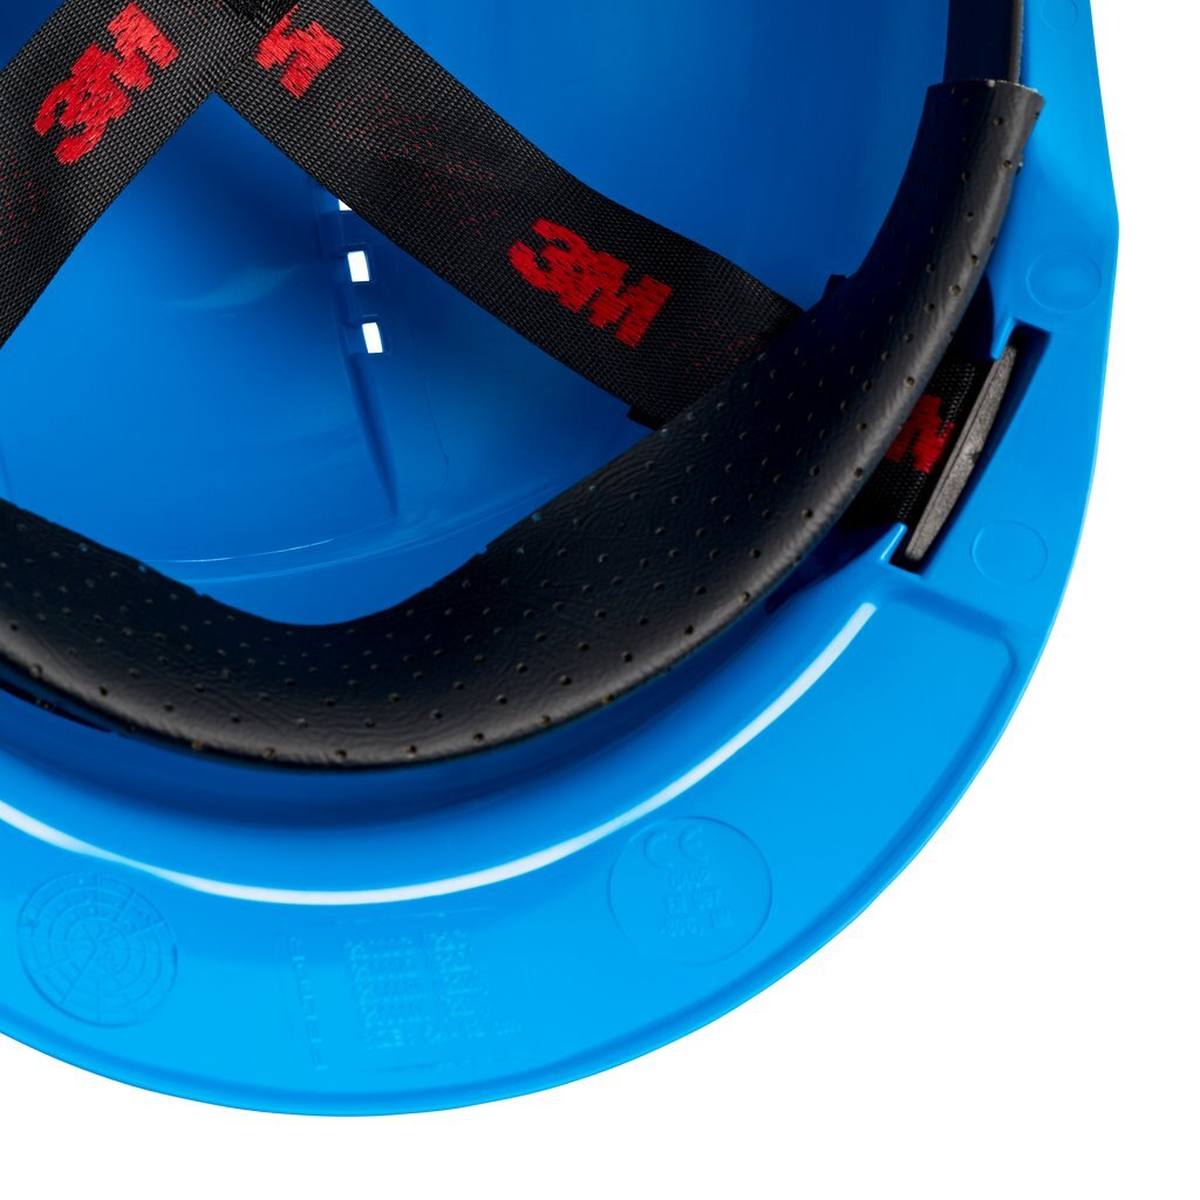 3M G3000 Schutzhelm G30CUB in Blau, belüftet, mit Uvicator, Pinlock und Kunststoffschweißband